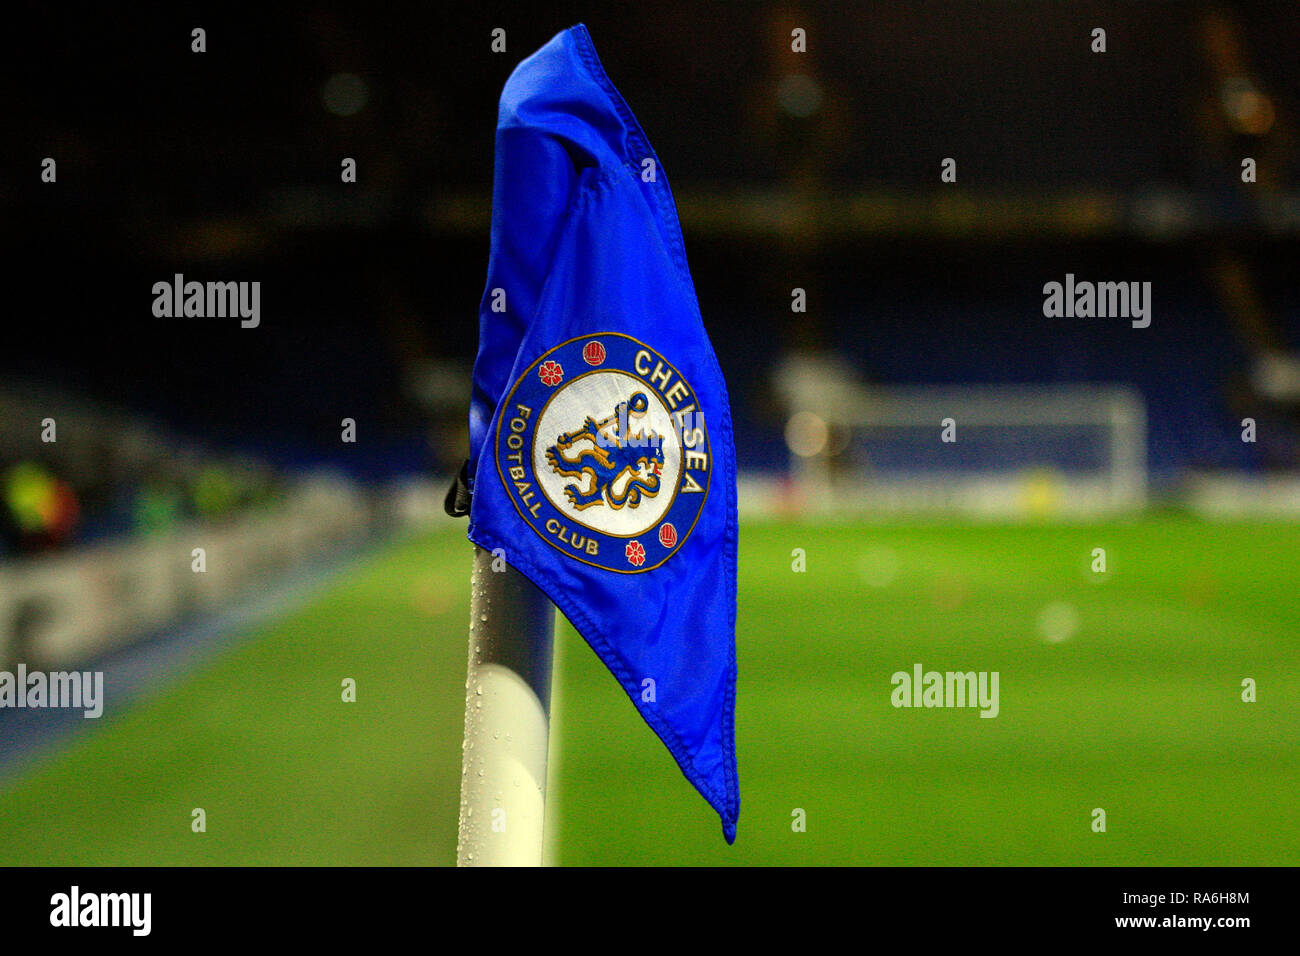 Calcio vista generale stadio bandiera d'angolo immagini e fotografie stock  ad alta risoluzione - Pagina 3 - Alamy